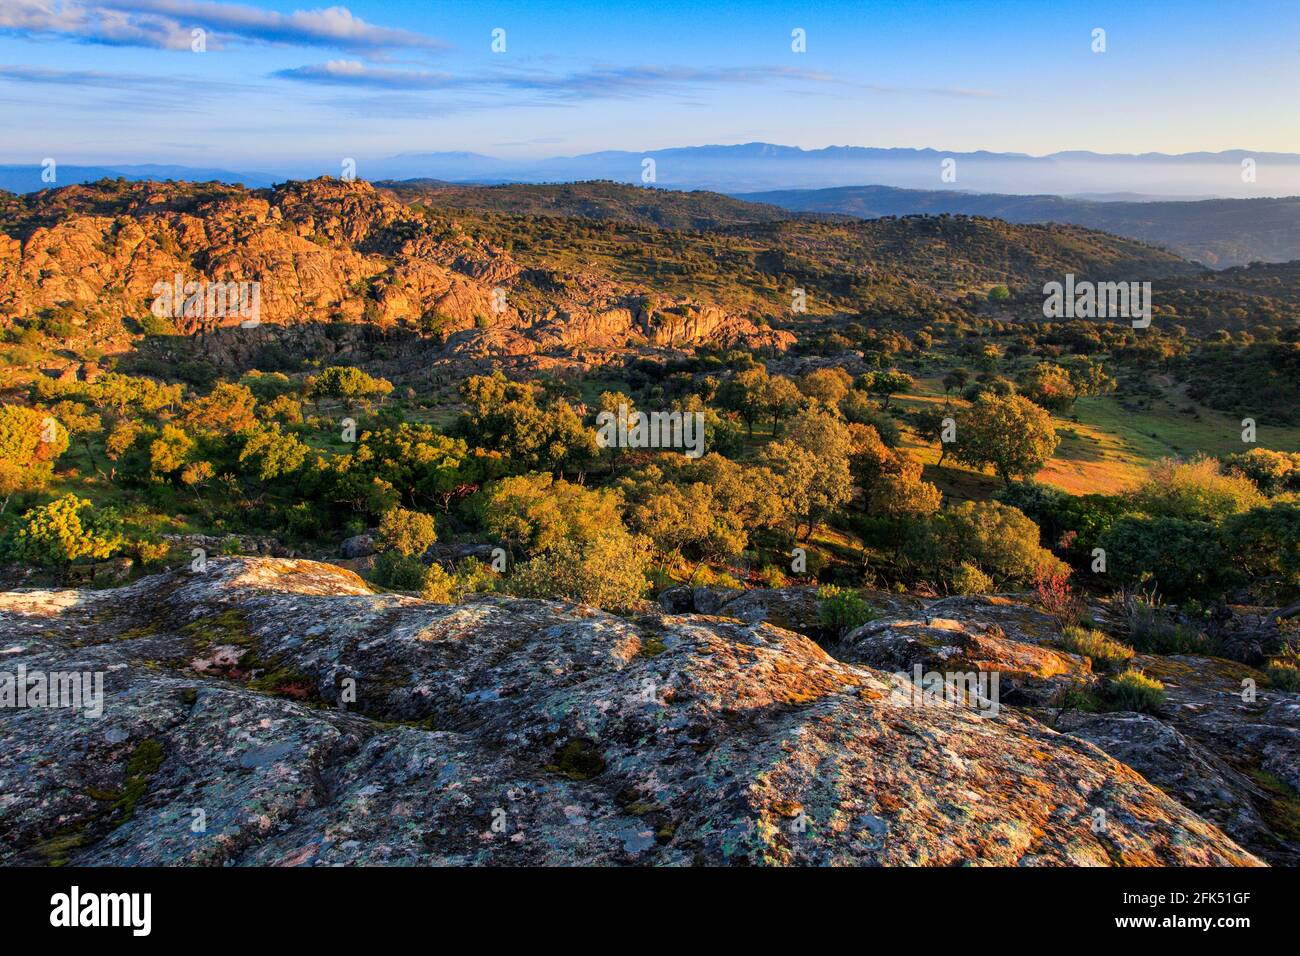 Typische Landschaft im Nationalpark Sierra de Andújar, Andalusien, Spanien Stock Photo